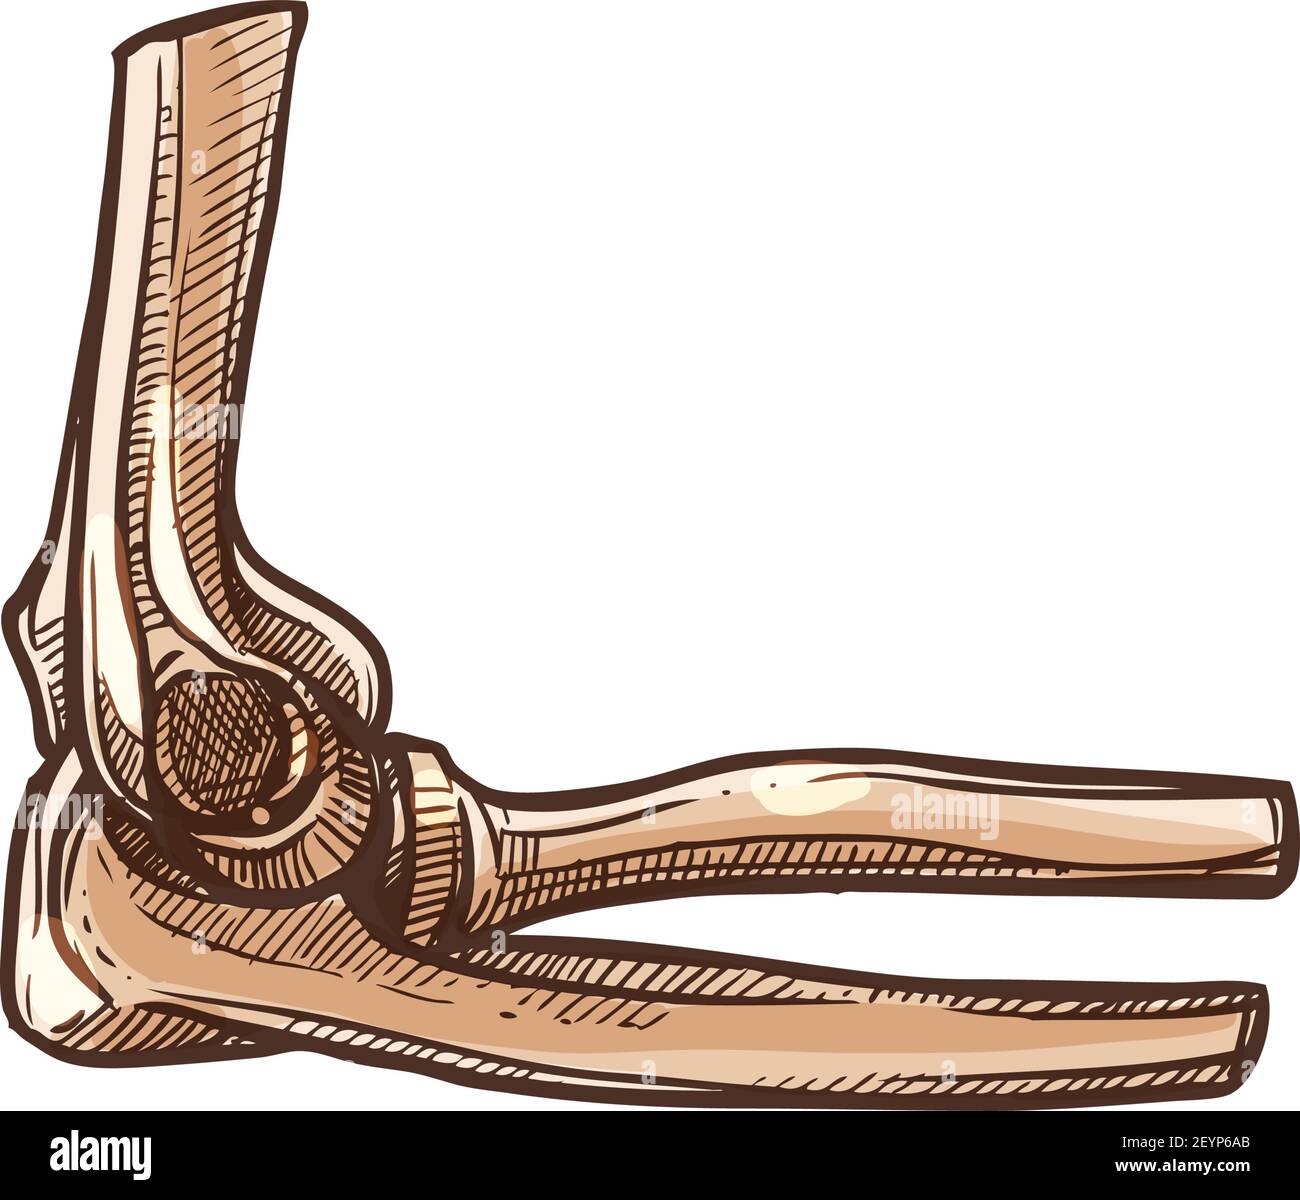 Ellbogenknochen, menschliches Skelett isolierte Skizze. Vektor zwei radiale Knochen von Unterarm und Ulna Stock Vektor